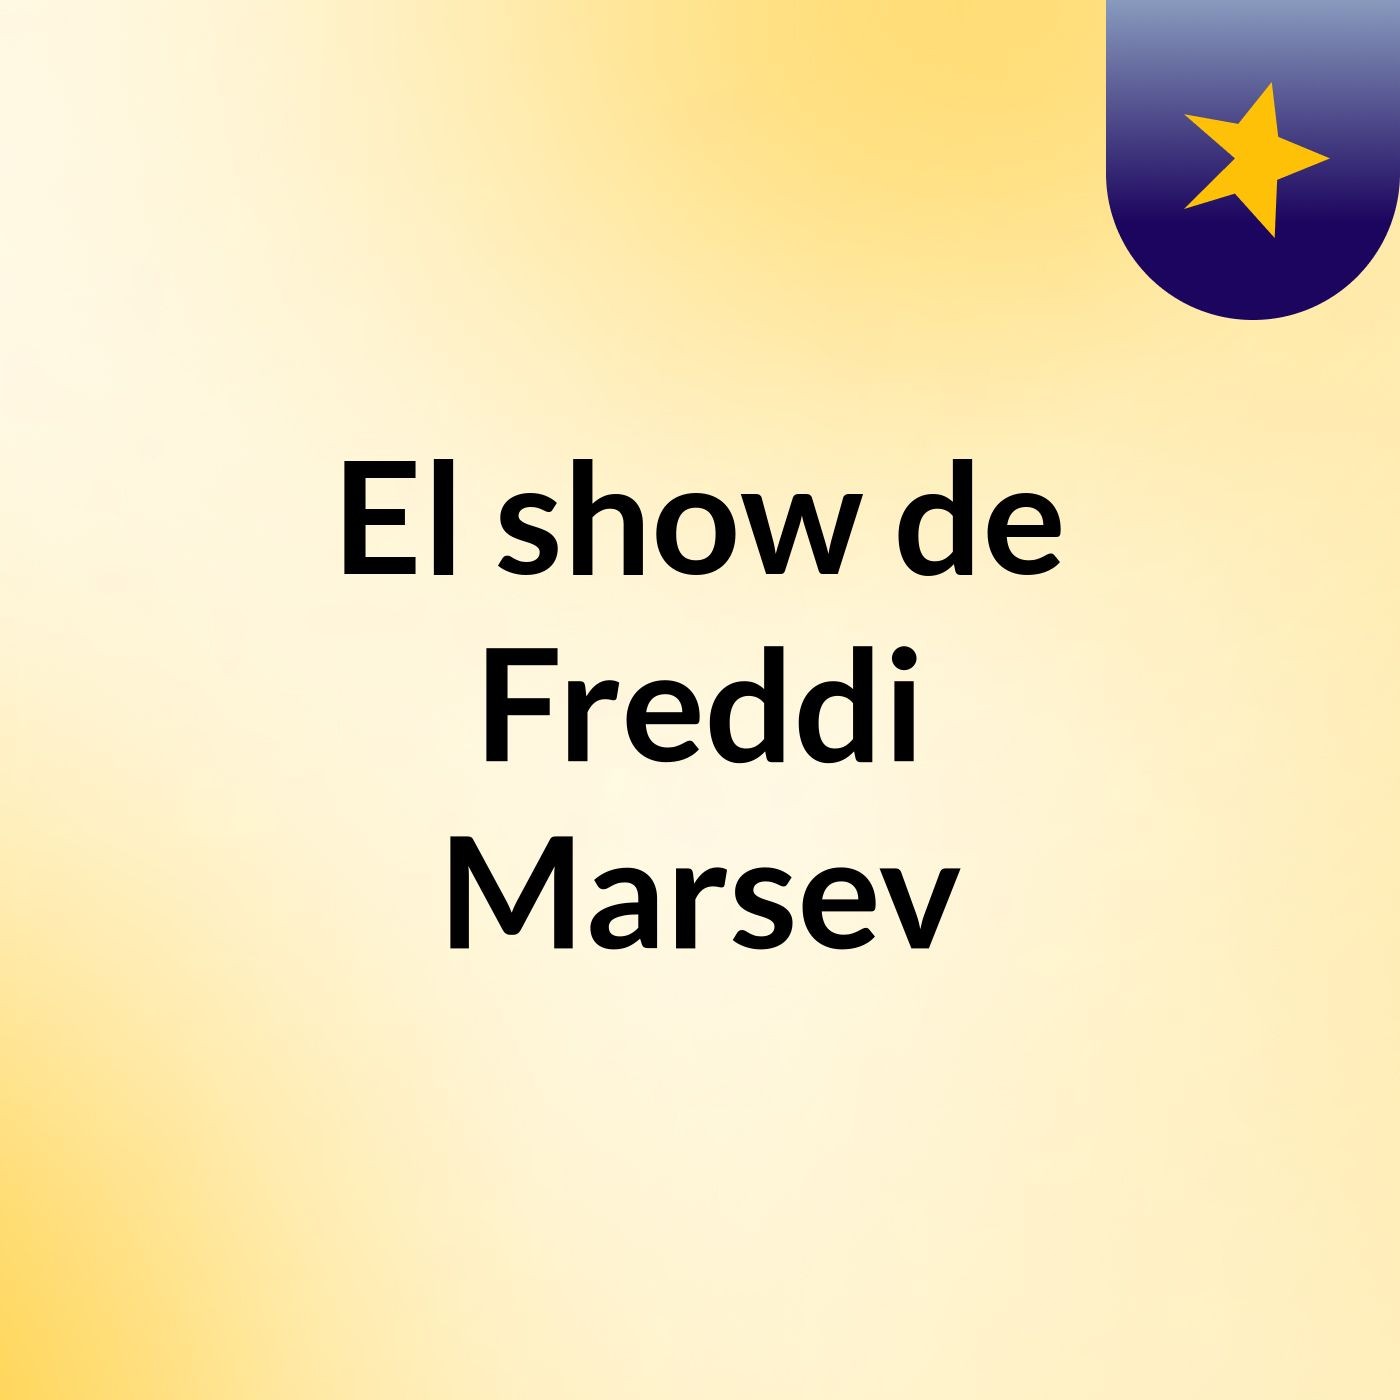 El show de Freddi Marsev